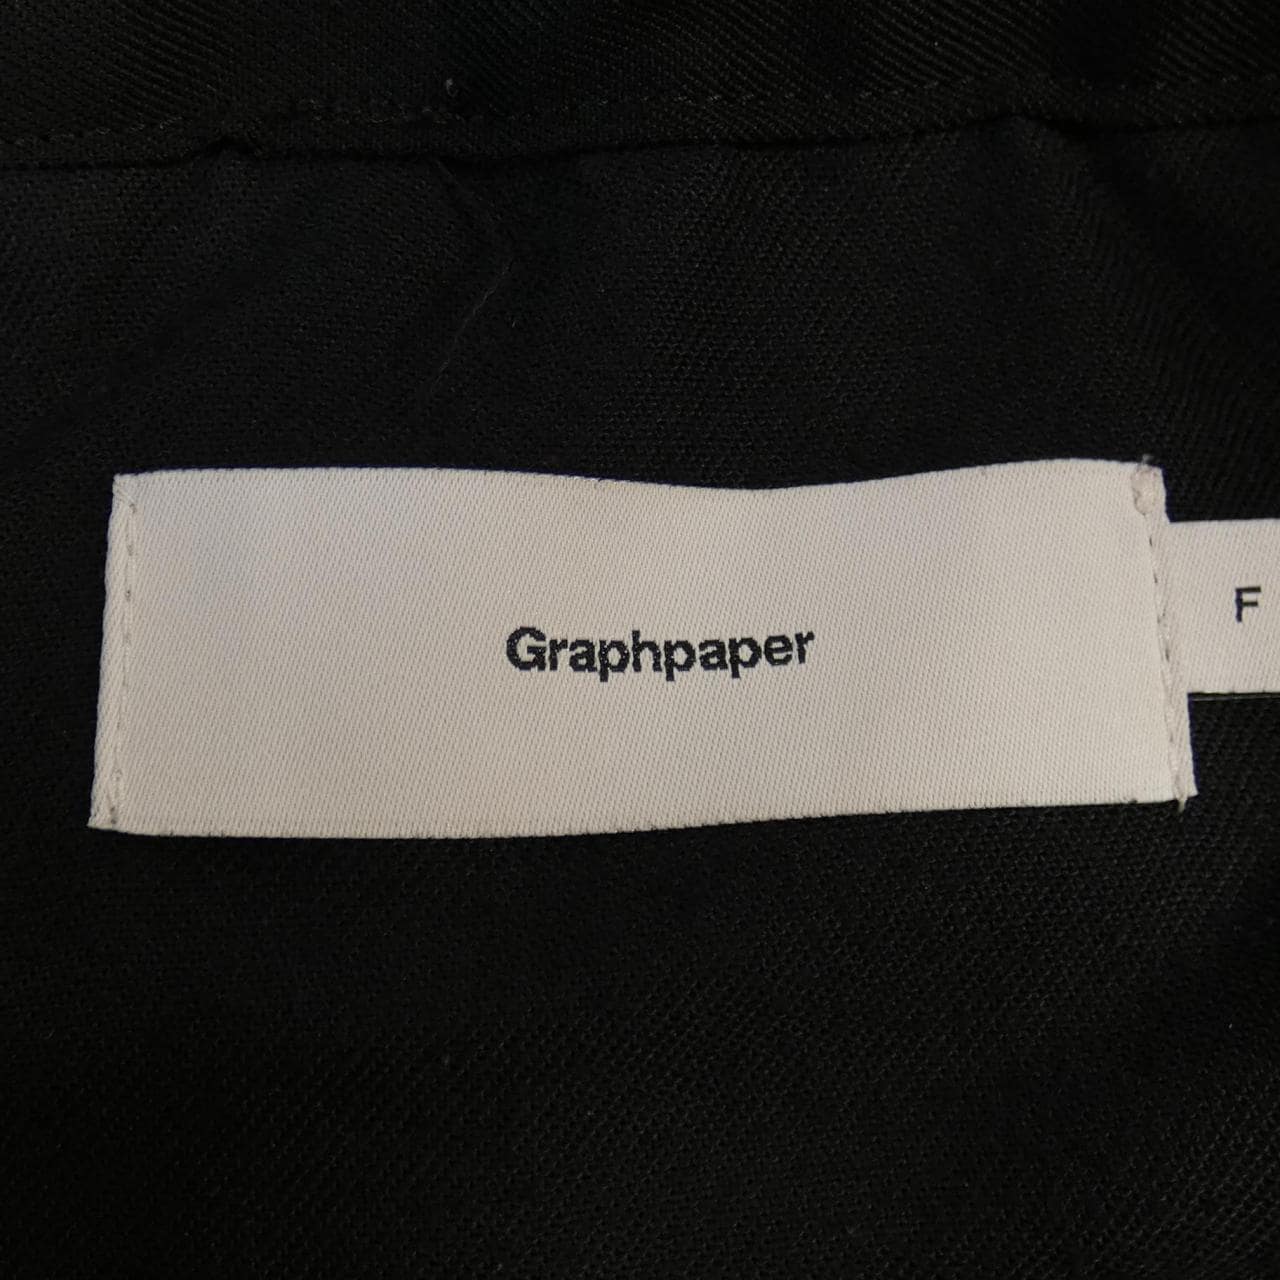 图表纸Graphpaper短裤